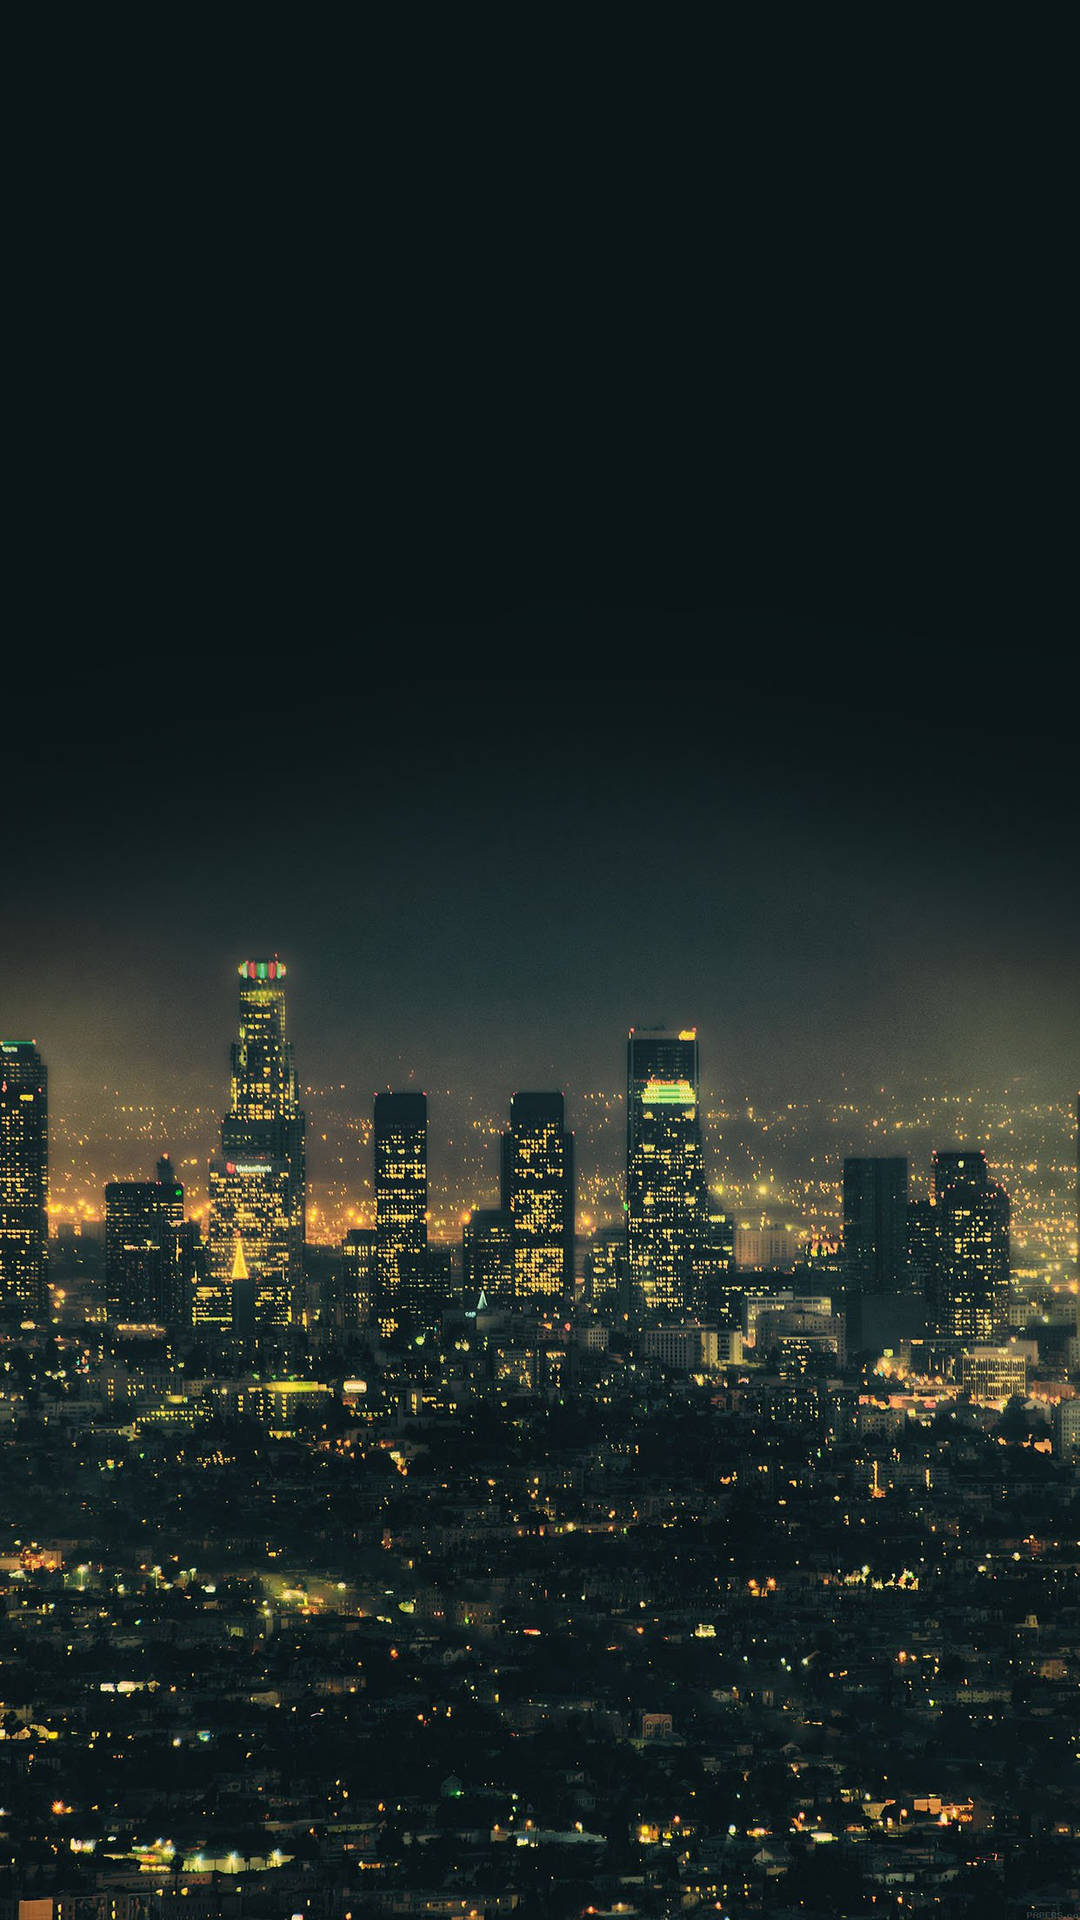 Dark Sky Over City Lights Smartphone Wallpaper